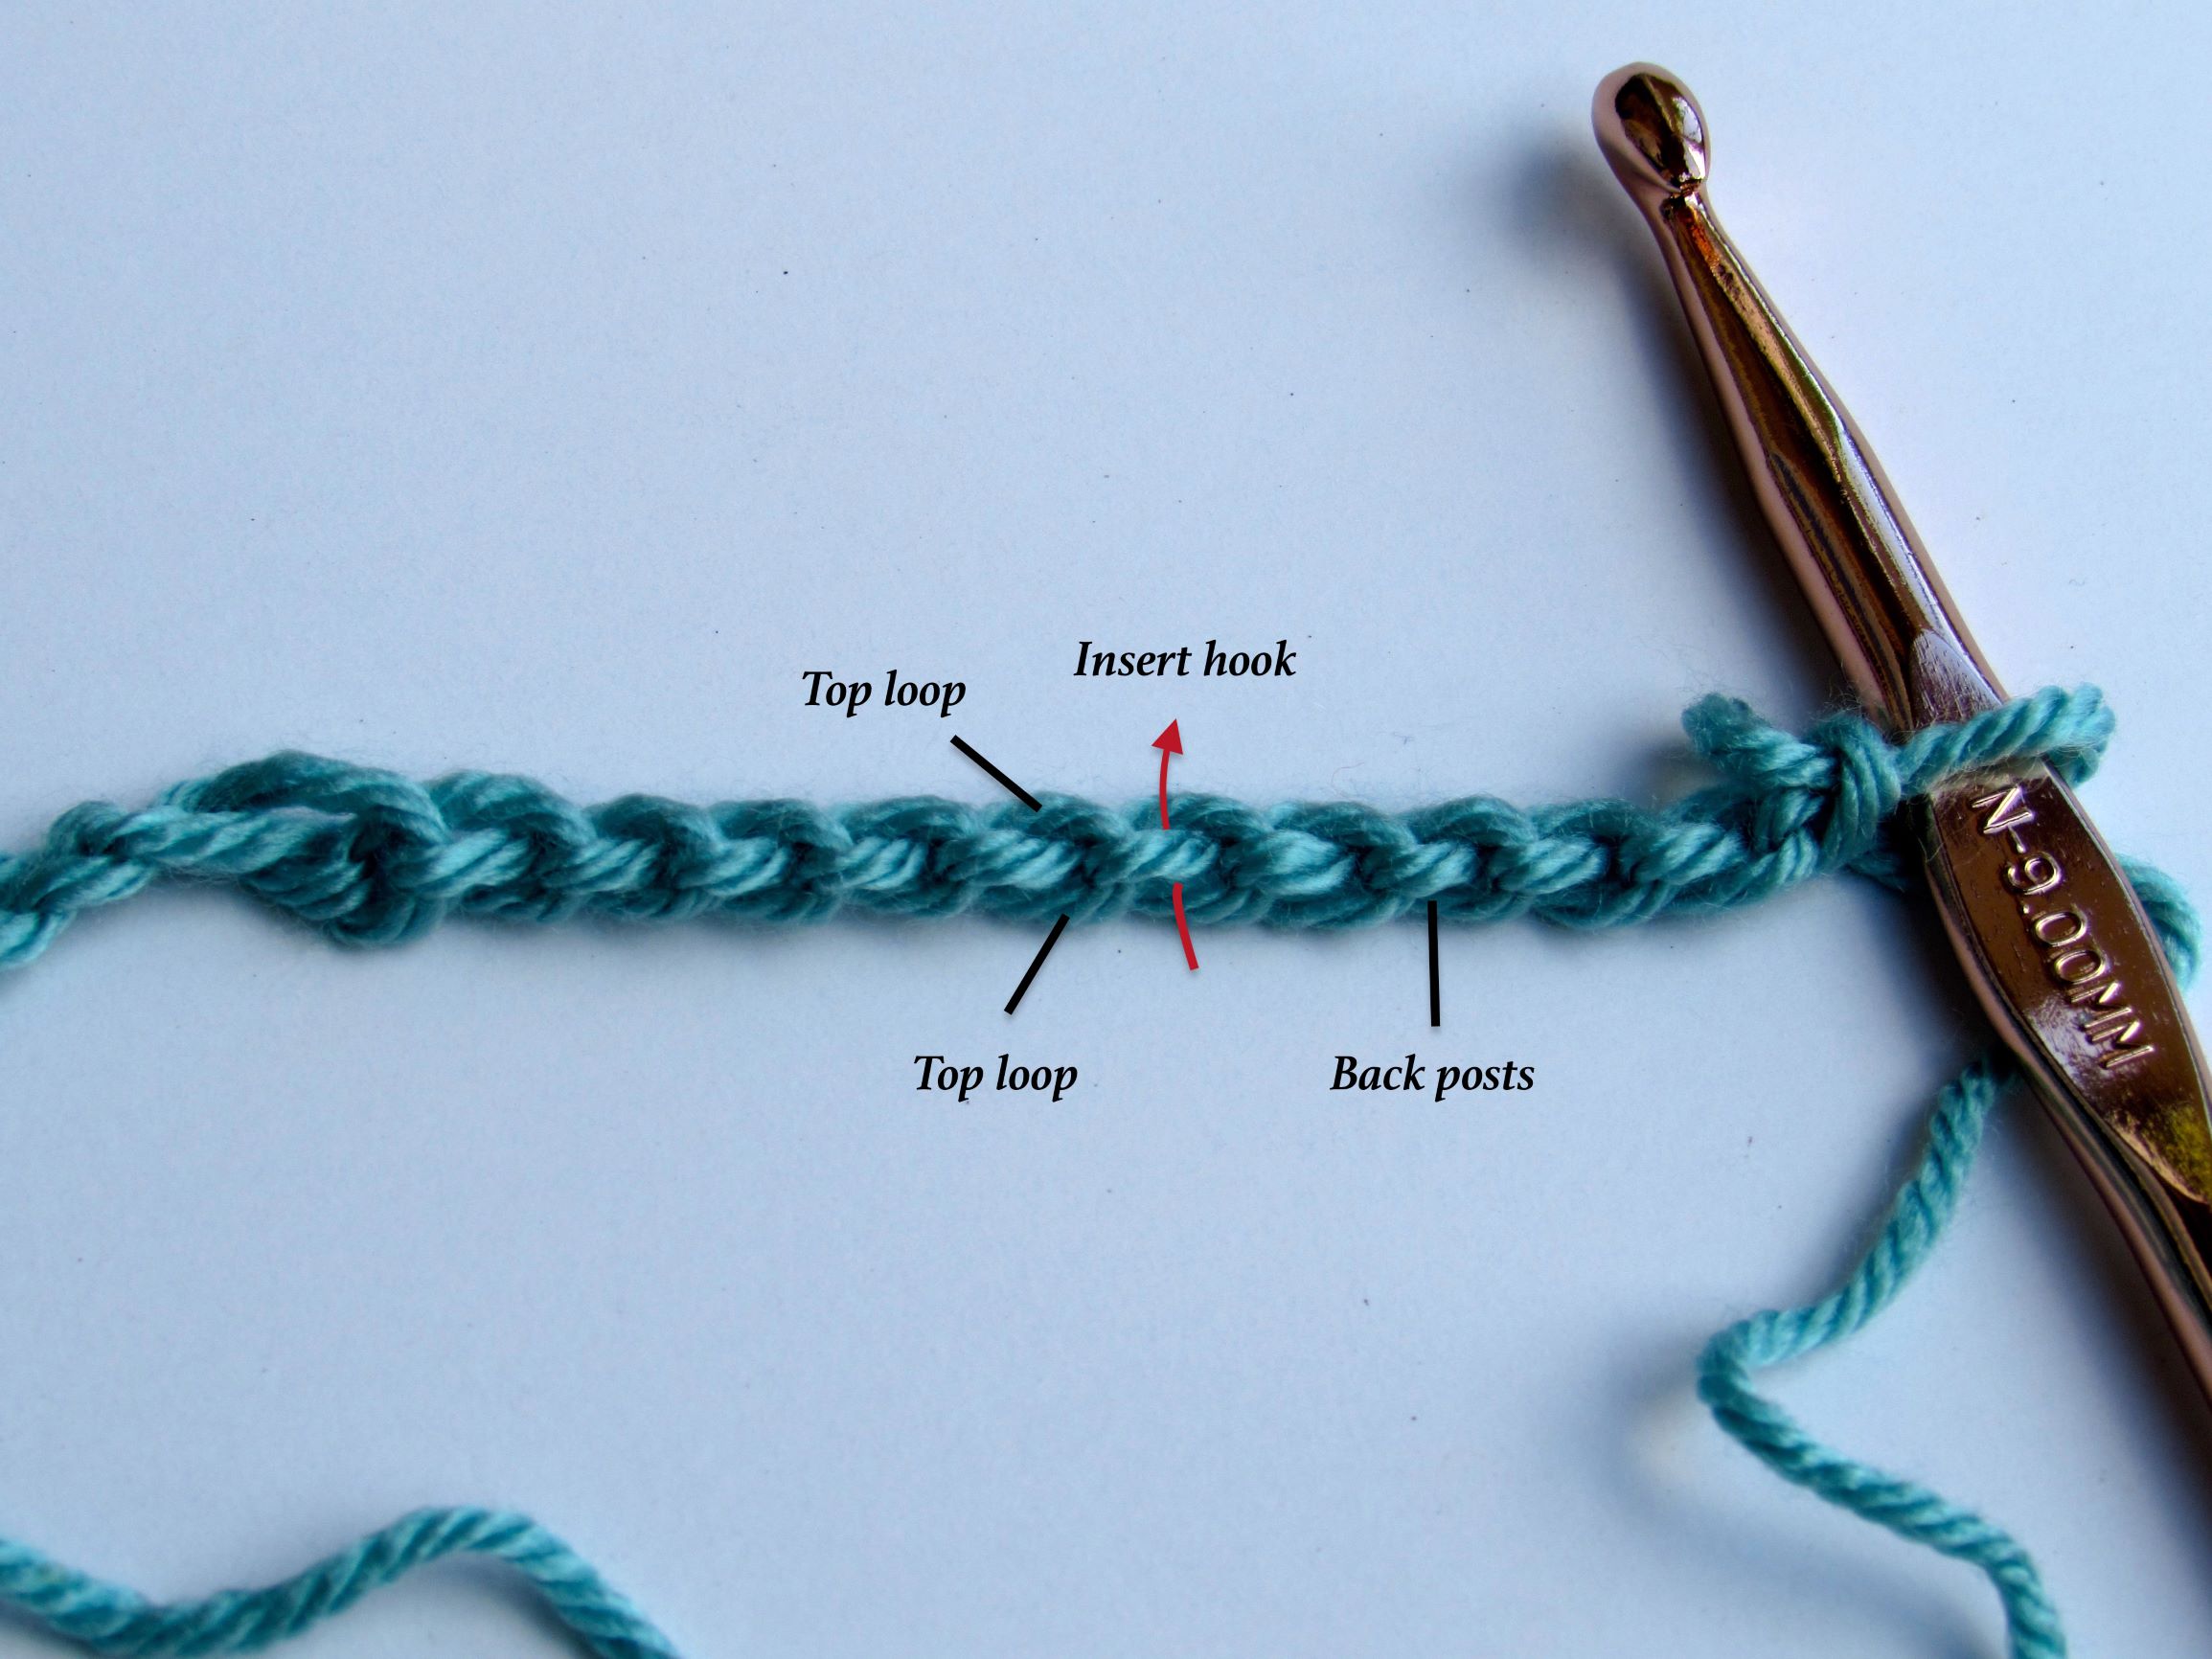 9 basic crochet steps